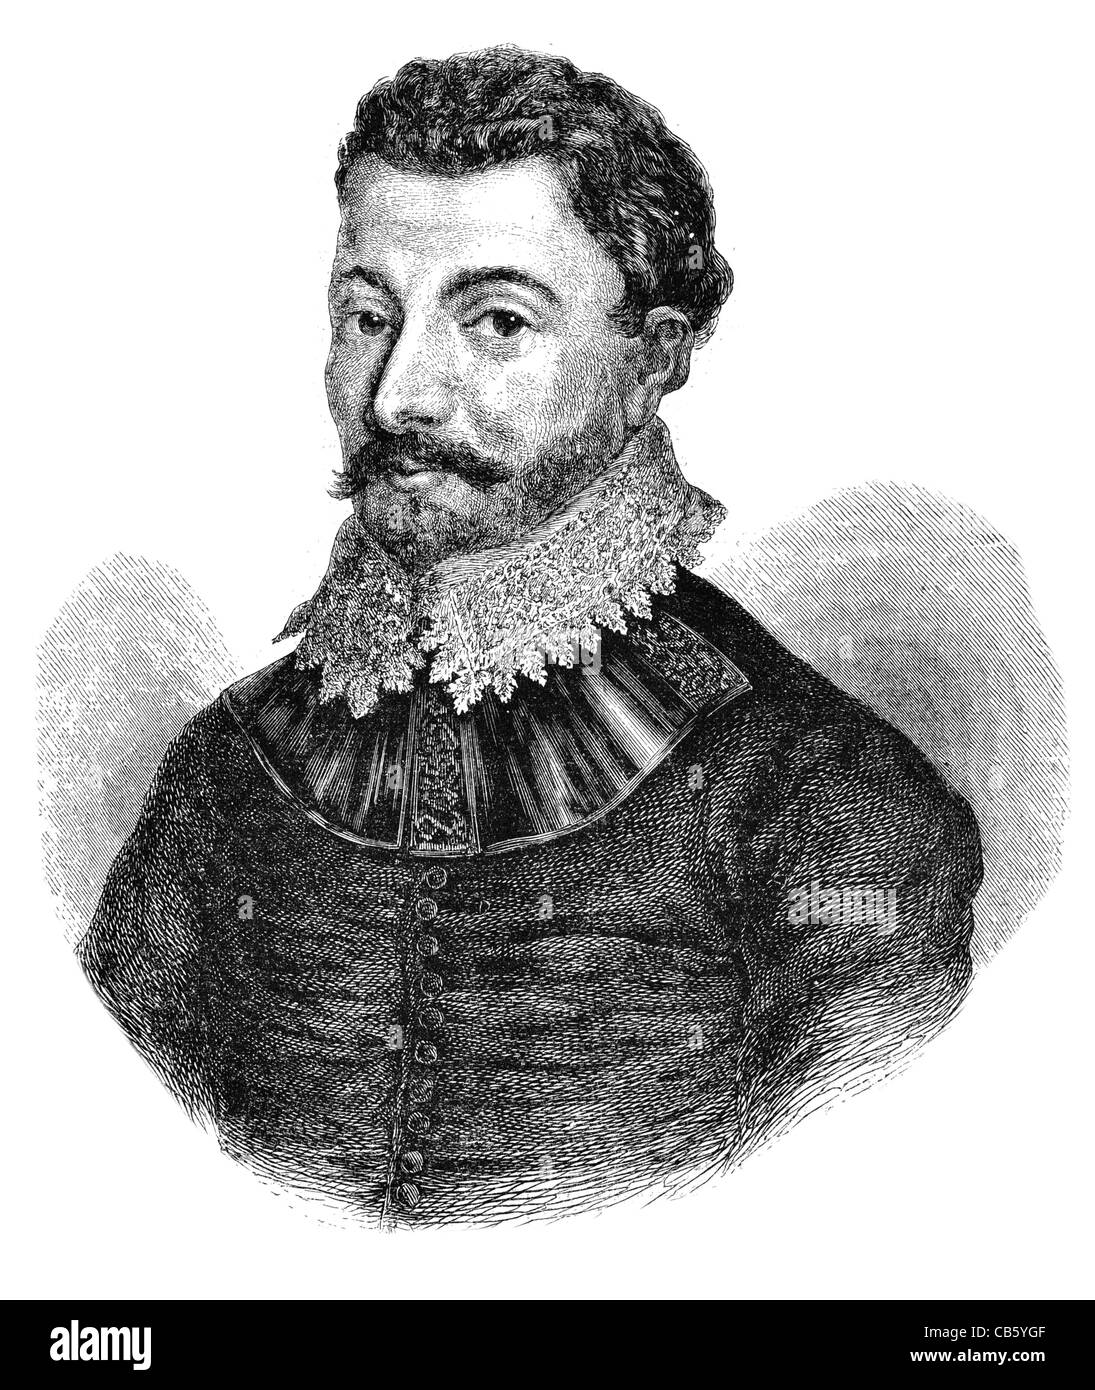 Le Vice-amiral Sir Francis Drake capitaine corsaire anglais navigator slaver ère élisabéthaine politicien Portrait de chevalier Banque D'Images